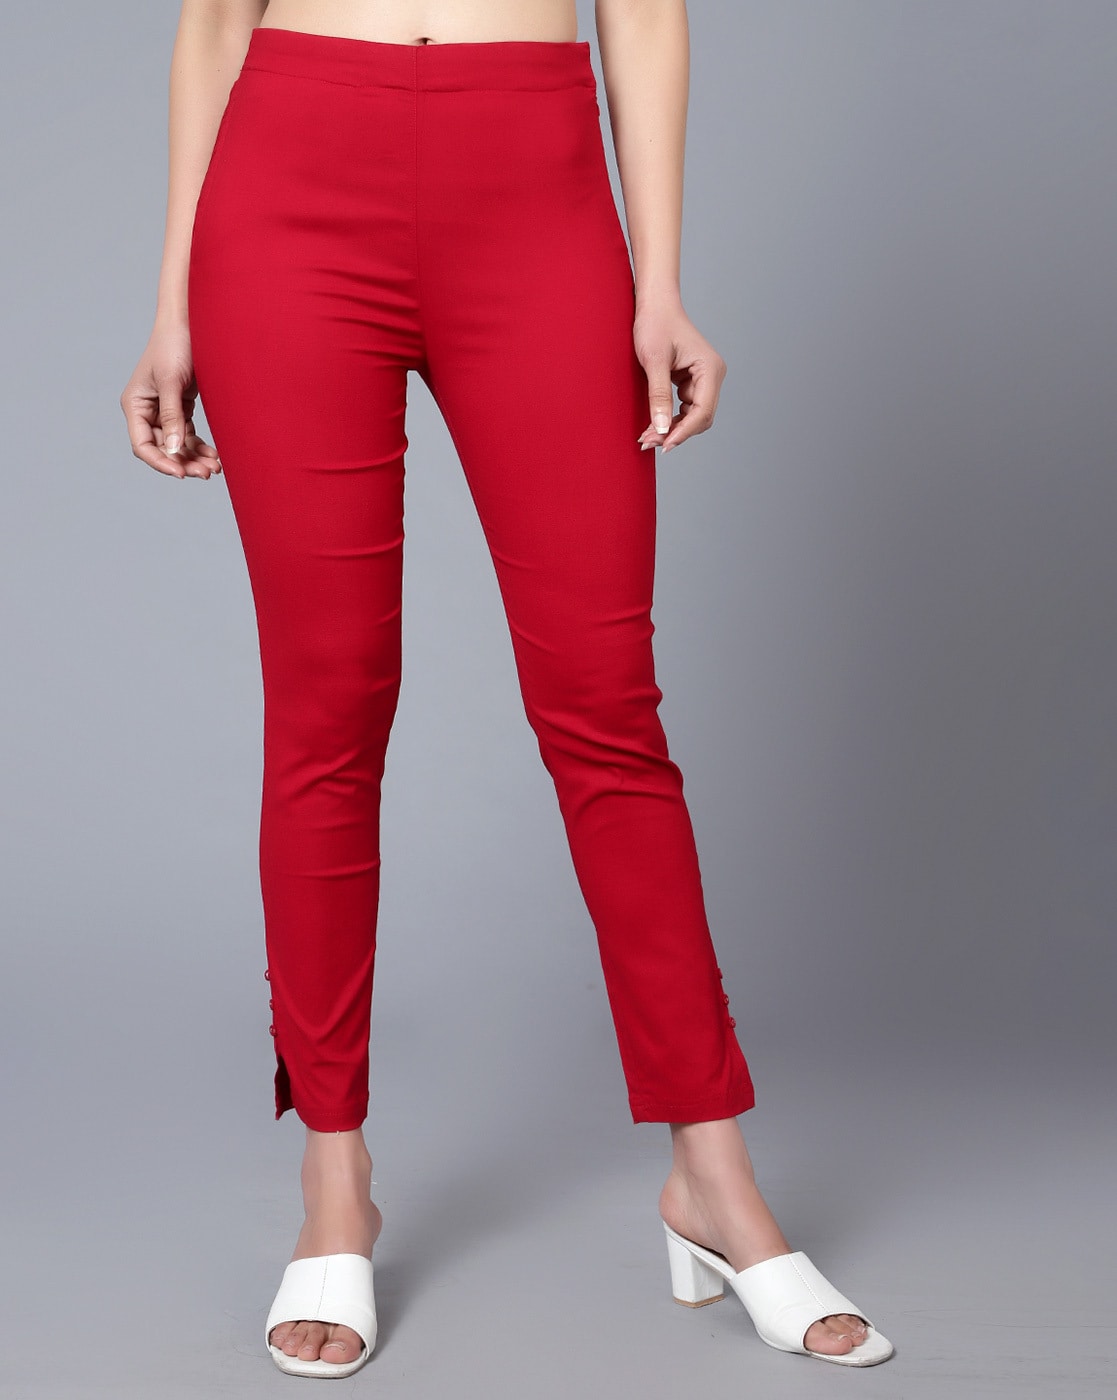 Buy Red Trousers  Pants for Women by BANI WOMEN Online  Ajiocom